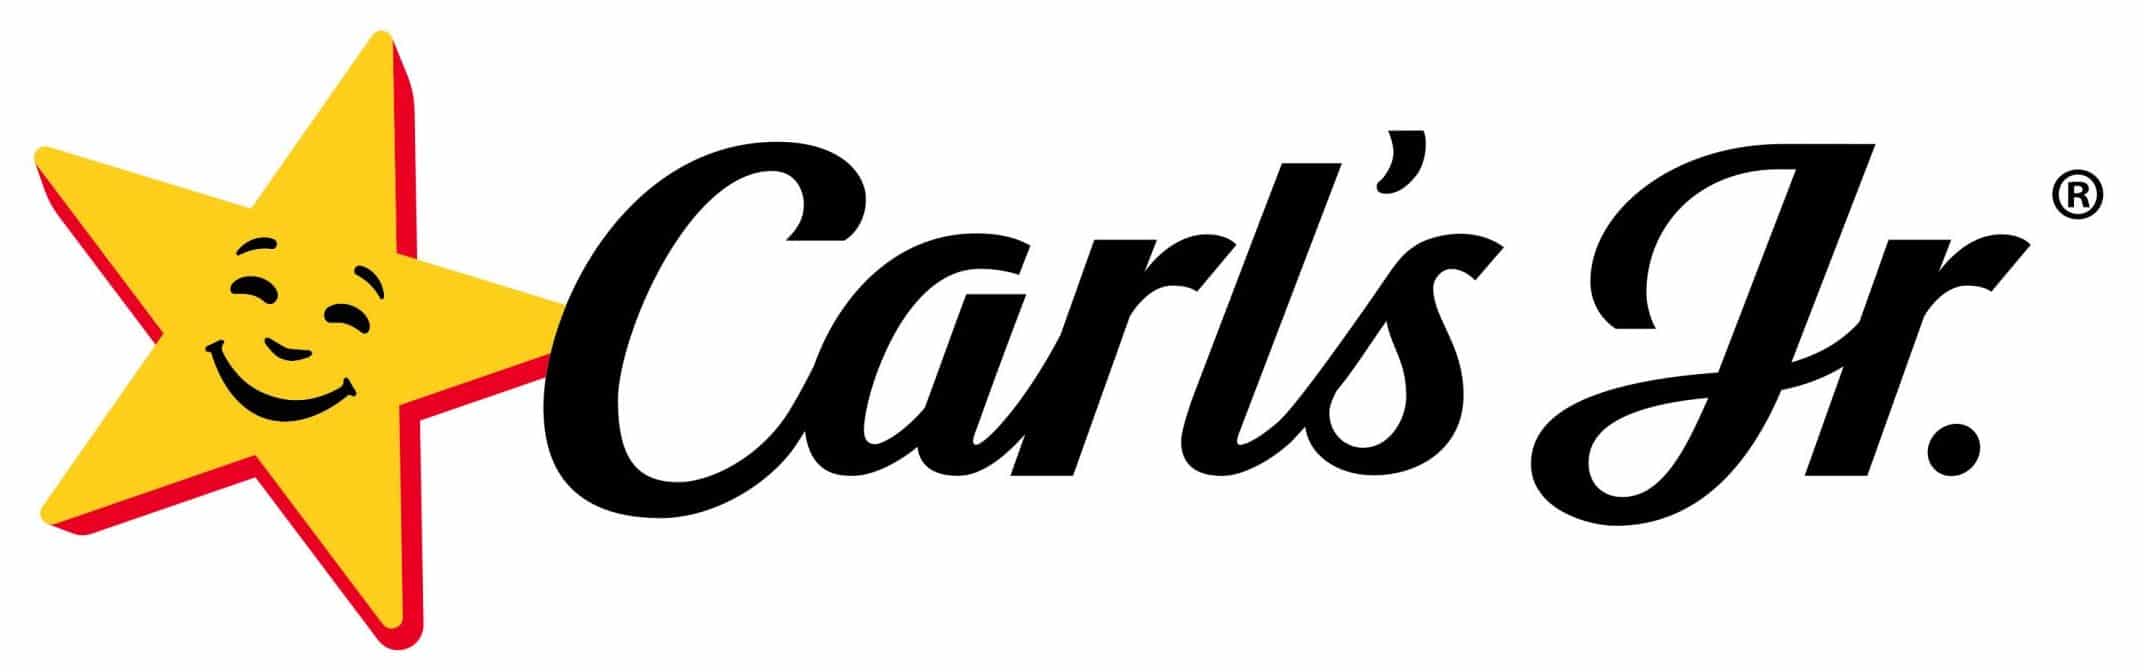 Logotipo de Carls Jr.